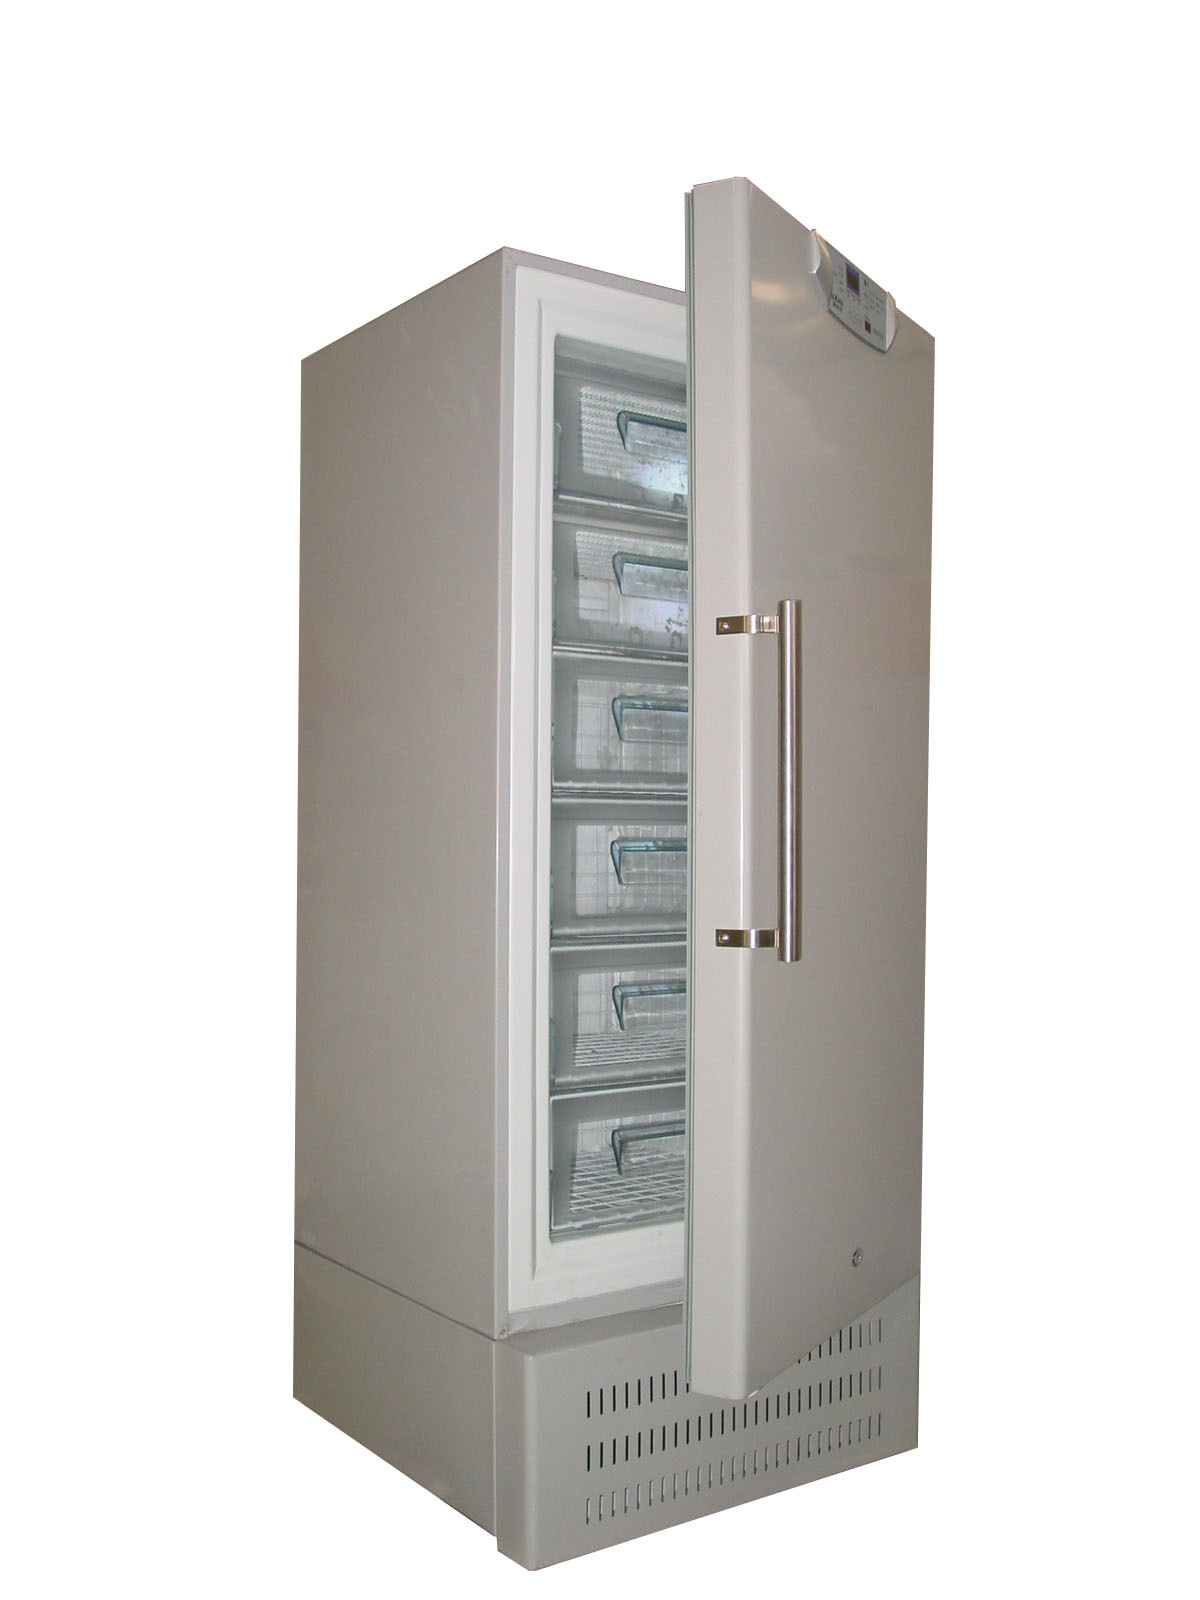 零下40度270升立式超低温冰箱北京德馨永嘉科技有限公司